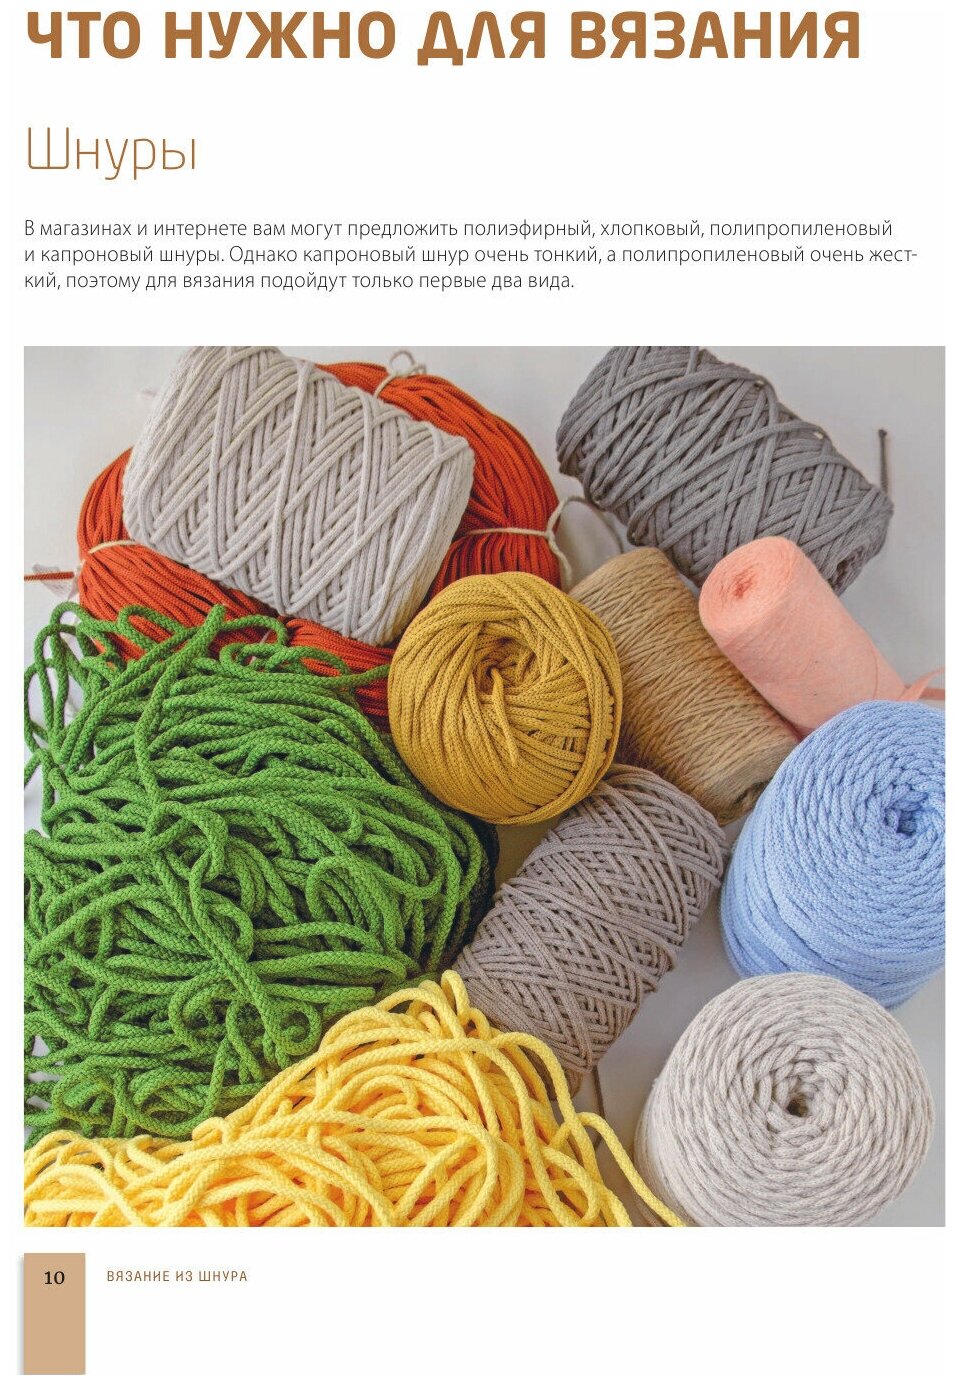 Вязание из шнура. Простые и стильные проекты для вязания крючком - фото №7